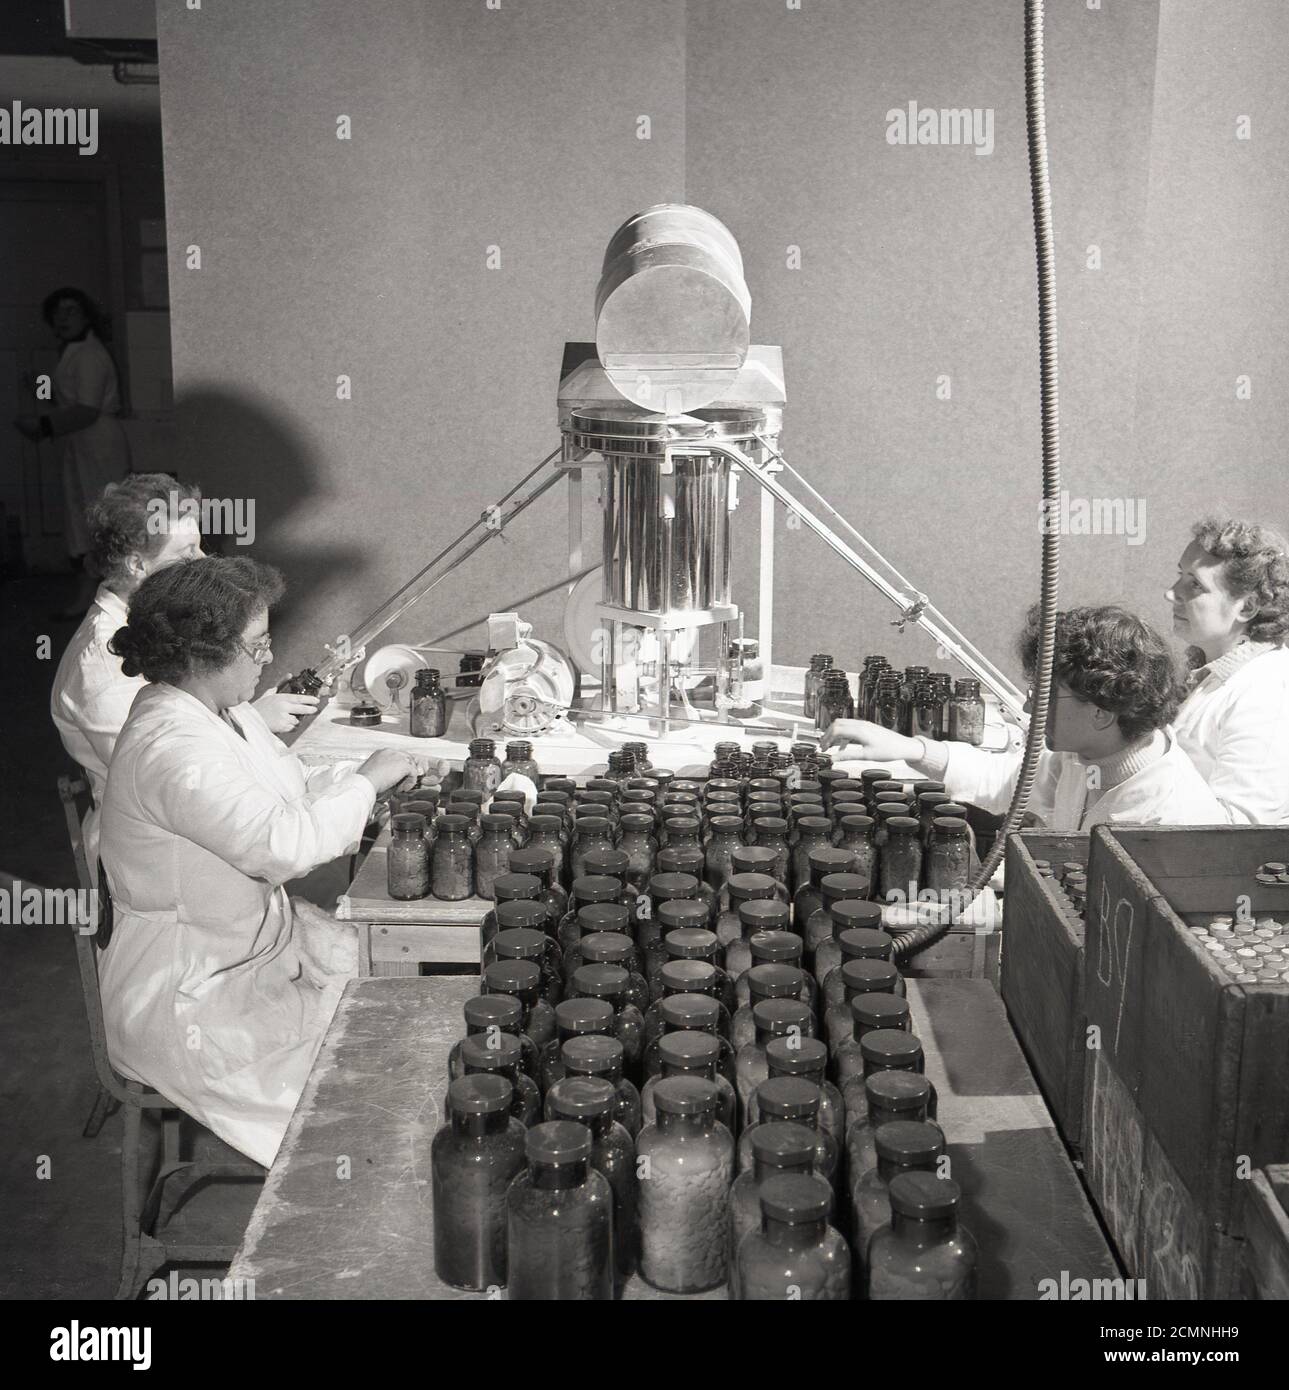 1950er Jahre, historisches Bild von J Allan Cash von vier weiß gestrichenen Arbeiterinnen bei der medizinischen oder pharmatualen Produktionsfirma Arthur Cox & Sons. Zwei der Damen sitzen mit Maschinen, um die Glasflaschen zu versiegeln, und neben ihnen setzen zwei Damen Plastikdeckel auf die Flaschen. Stockfoto